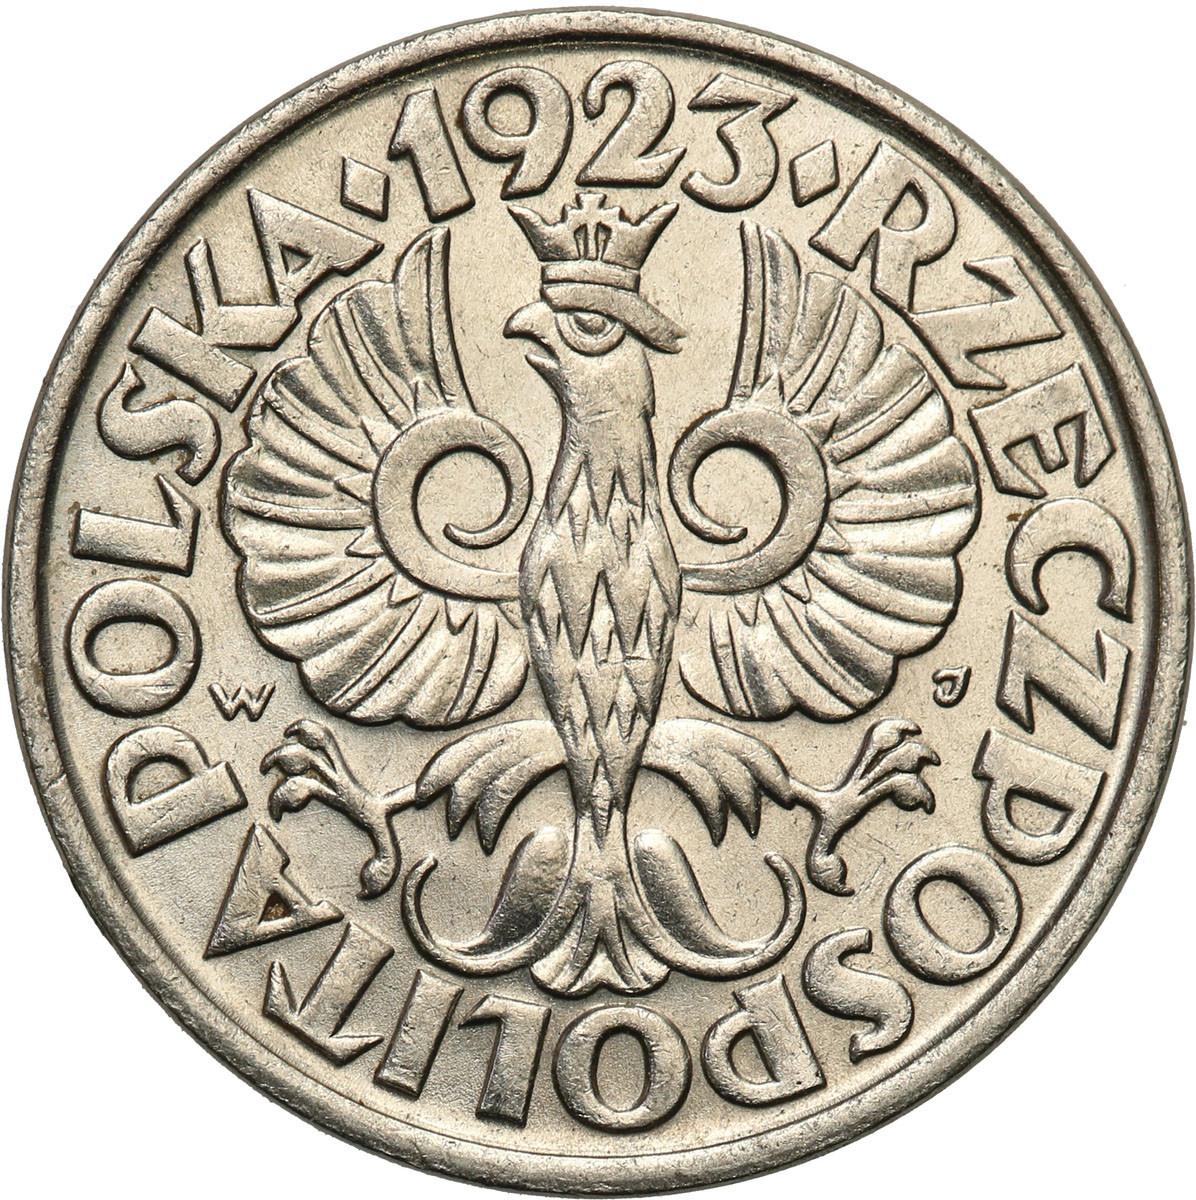 II RP 20 groszy 1923